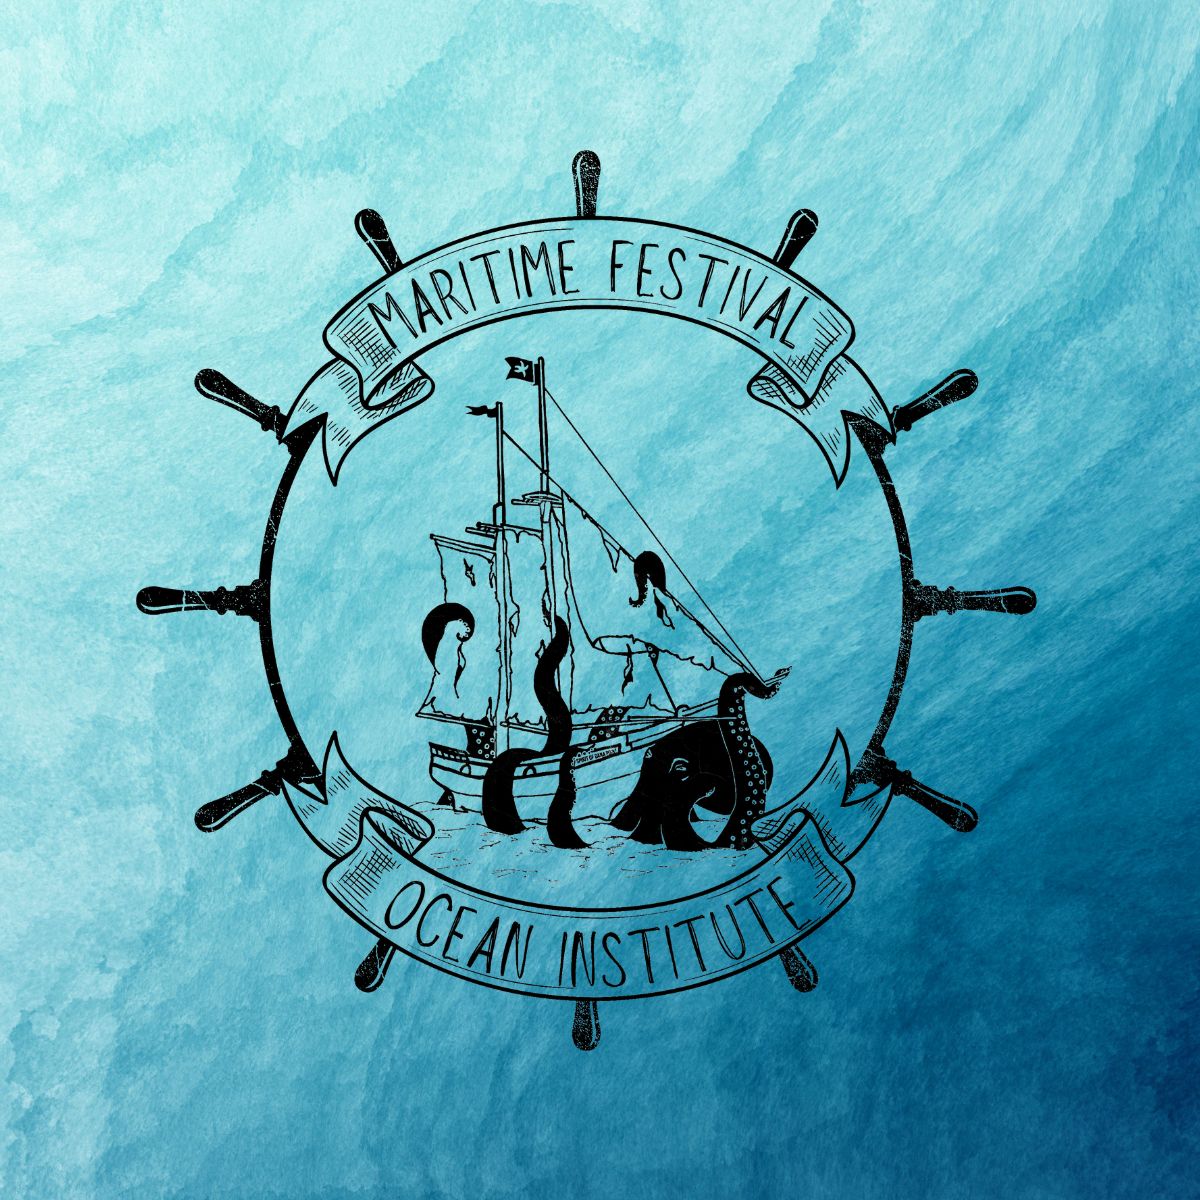 Maritime Festival (Tall Ships Festival)